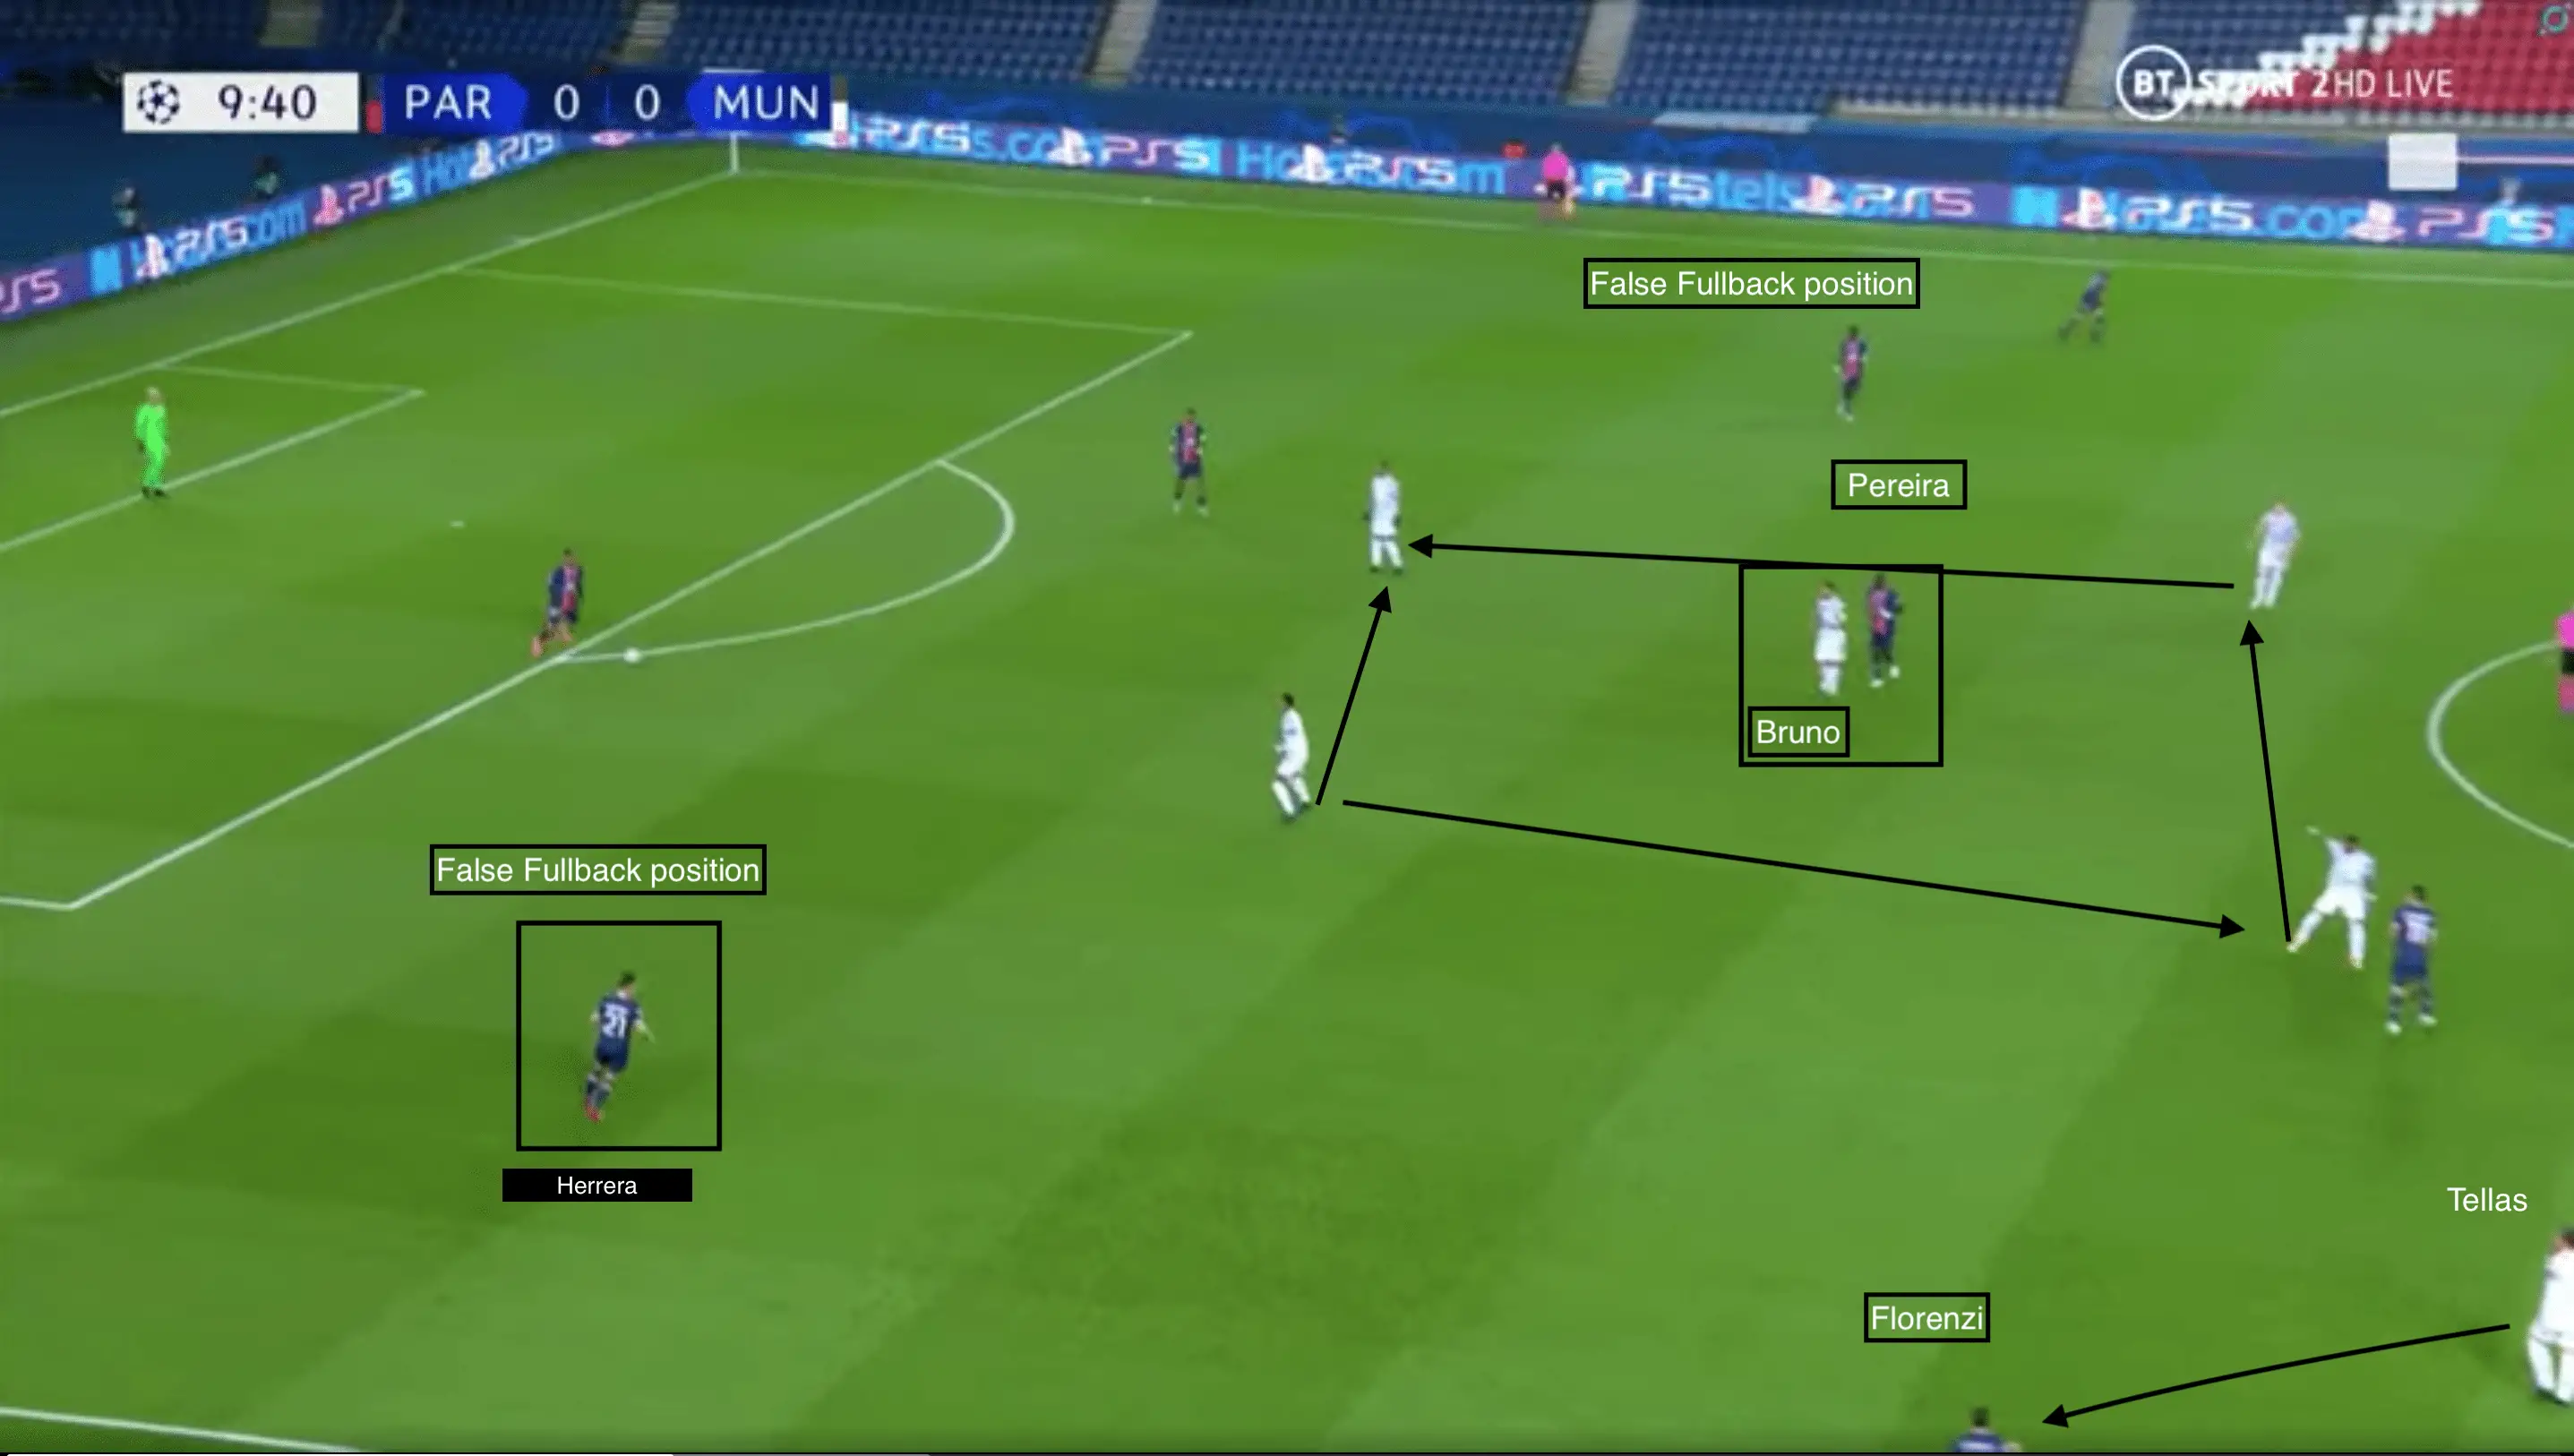 Paris vs Man Utd Tactical analysis-Tactics